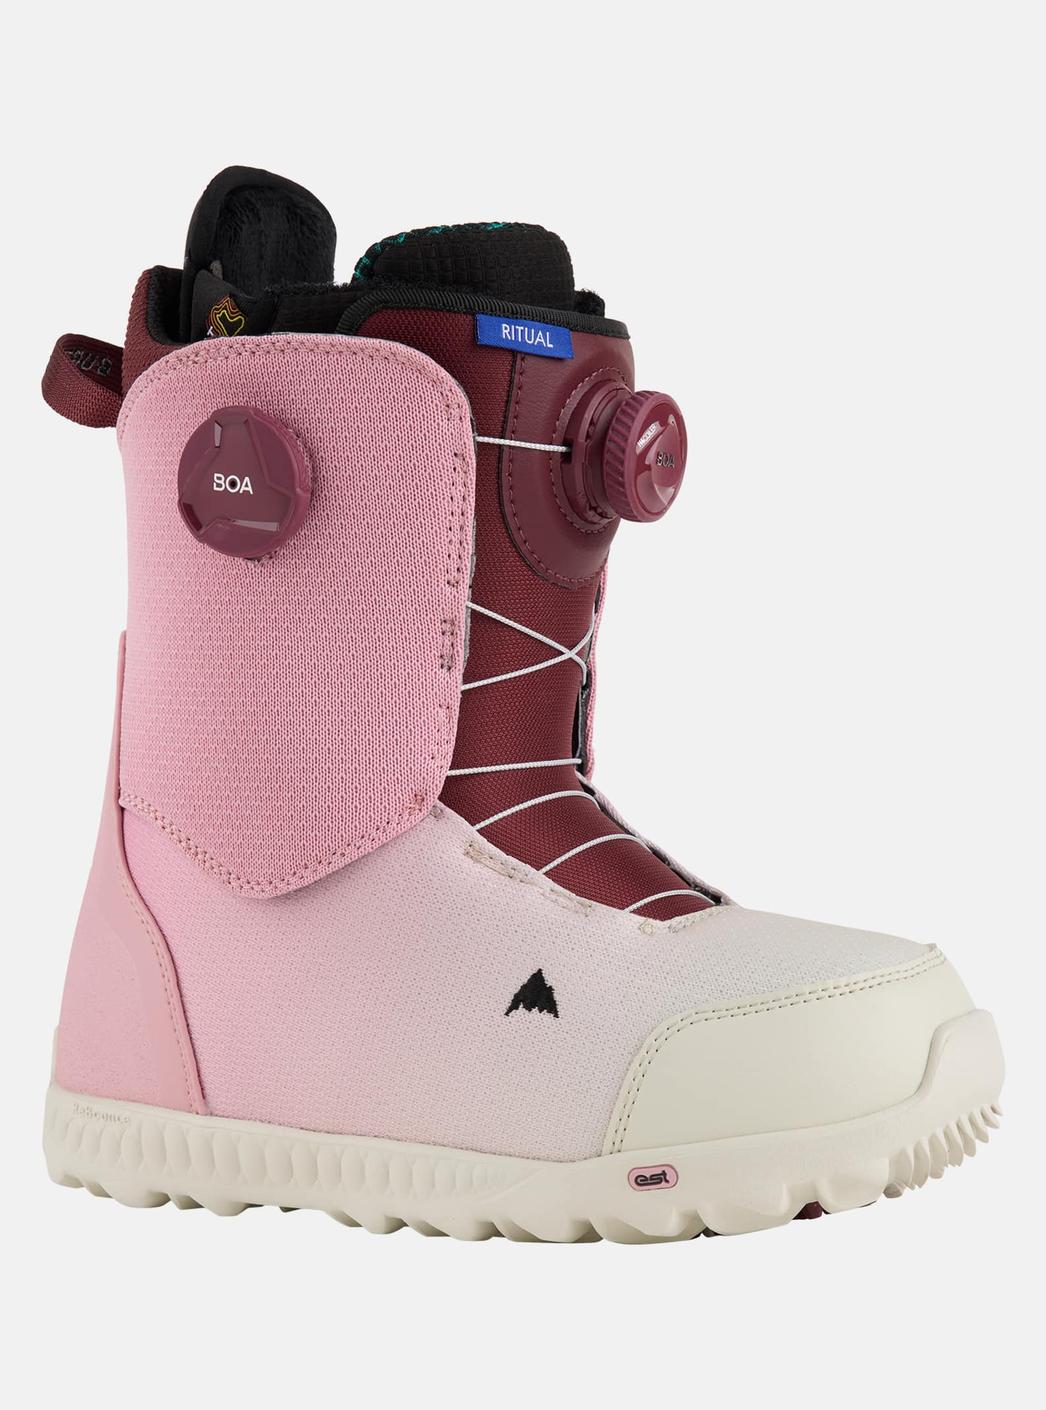 Burton - Boots de snowboard Ritual BOA® femme offre à 410€ sur Burton of London